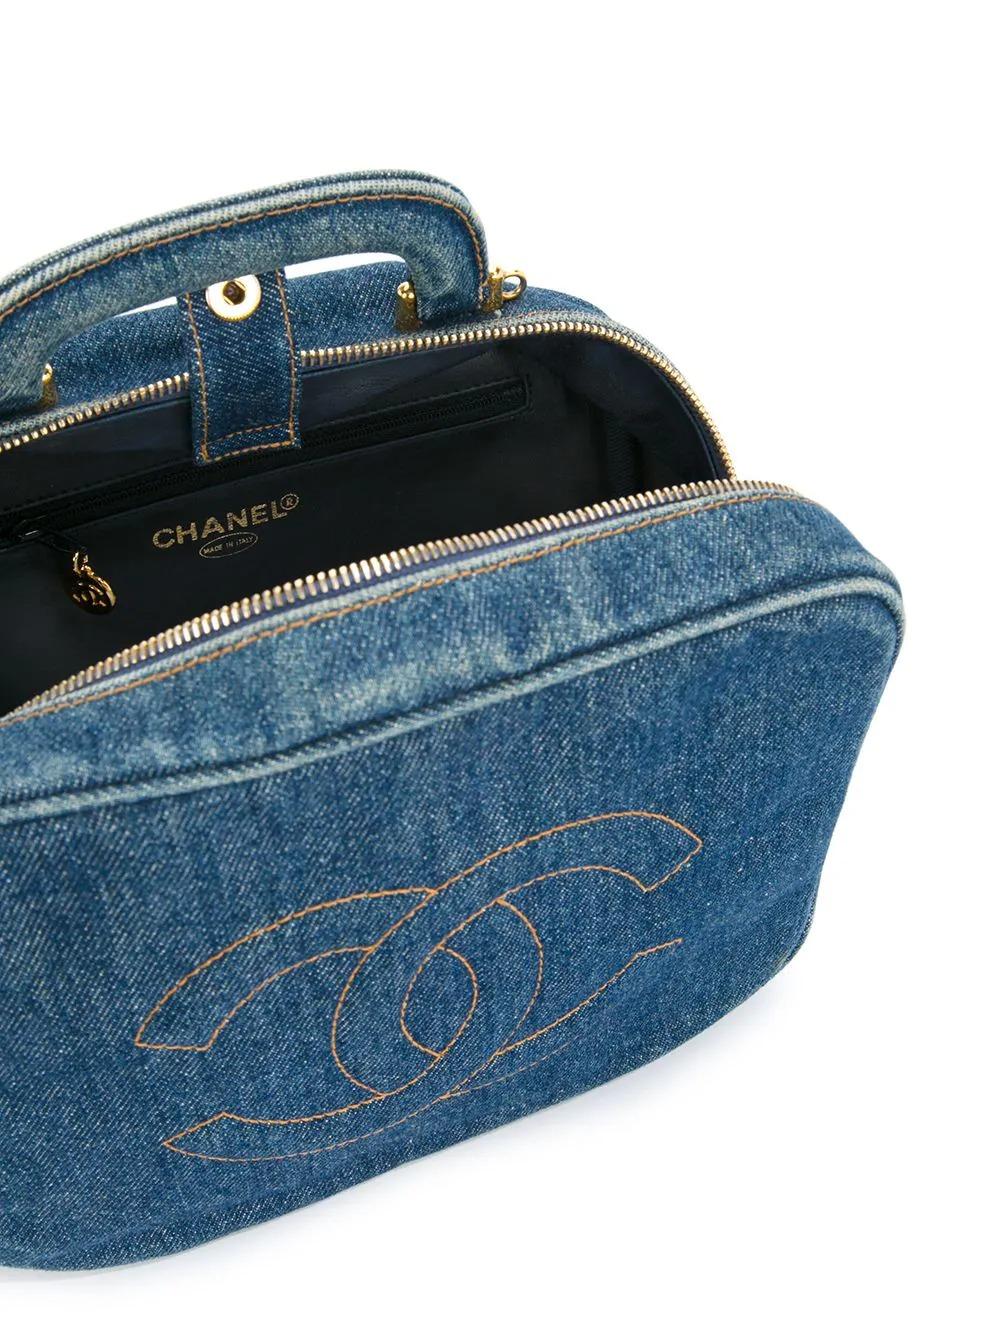 Chanel Vanity Case Rare Vintage Blue Mini Crossbody Black Denim Shoulder Bag For Sale 2